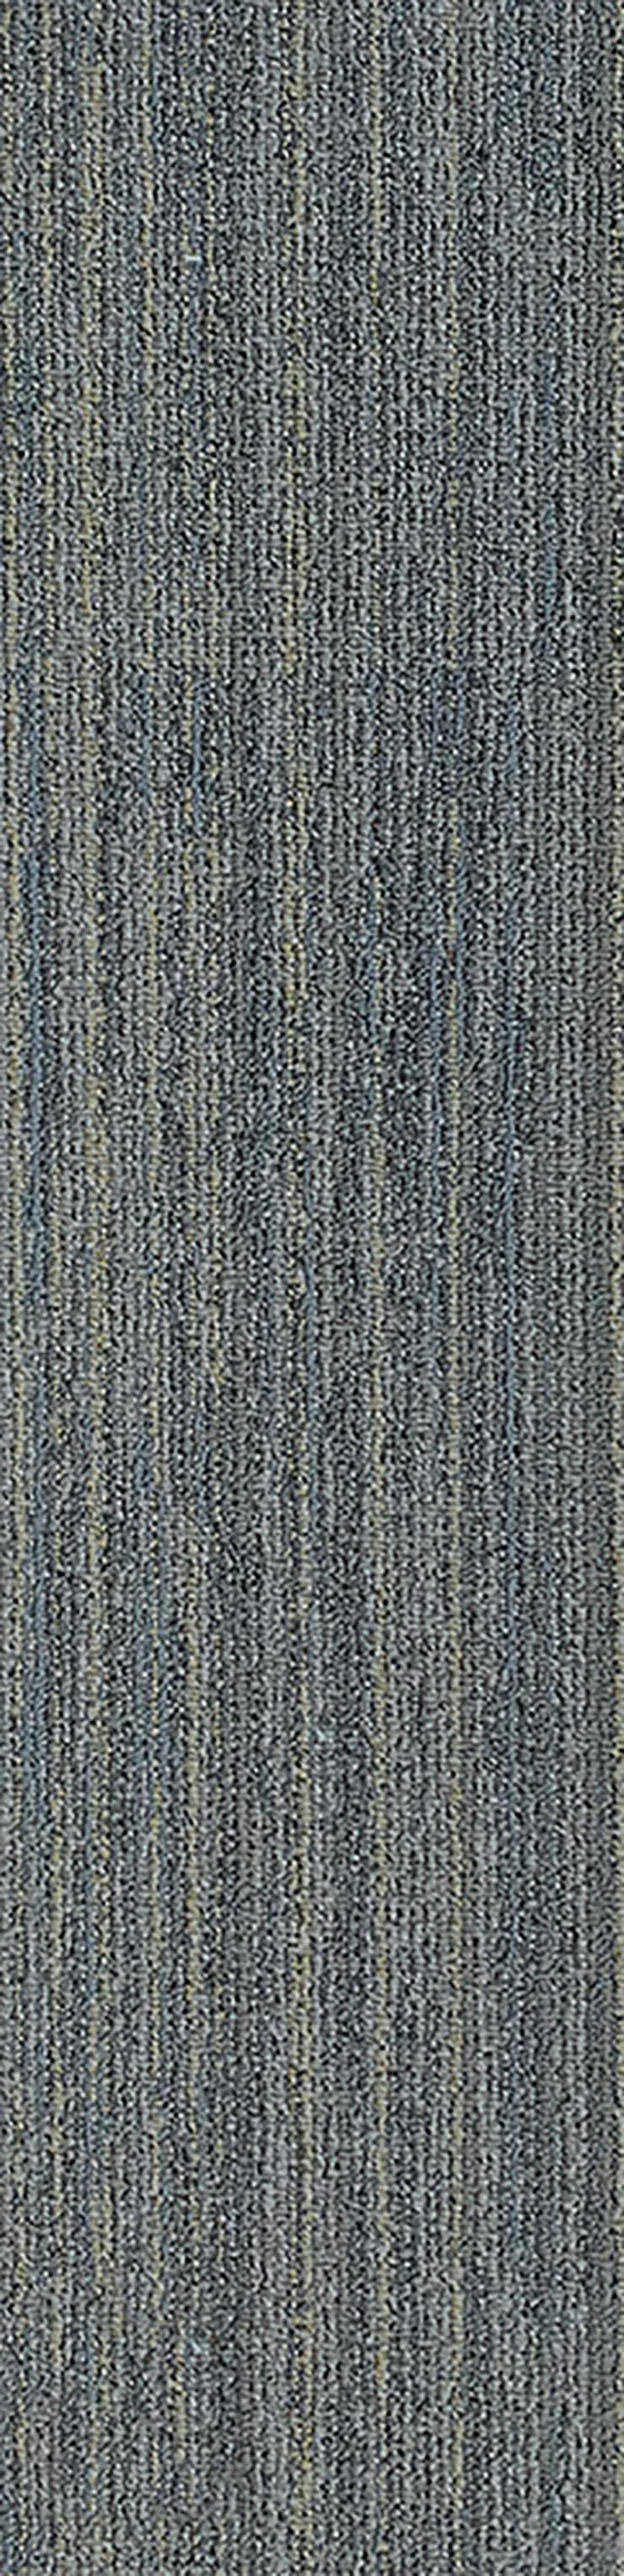 Schöne 'Laminat' Teppichfliesen 25x100cm Sehr Decorativ - Teppiche - Bild 4